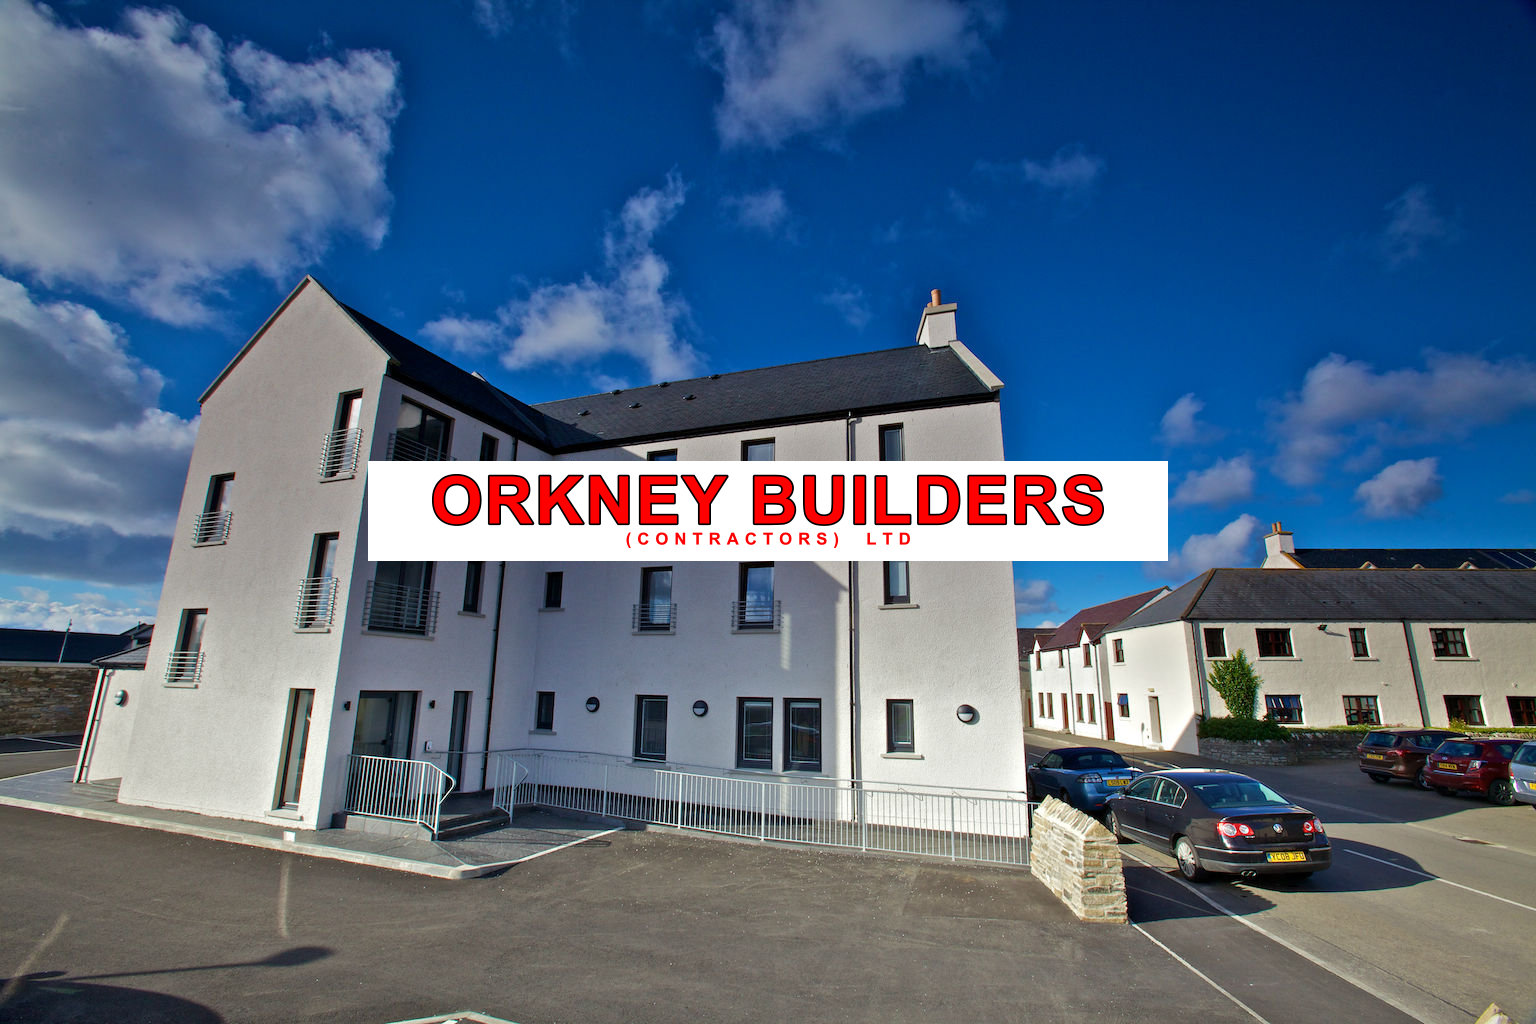 (c) Orkneybuilders.com